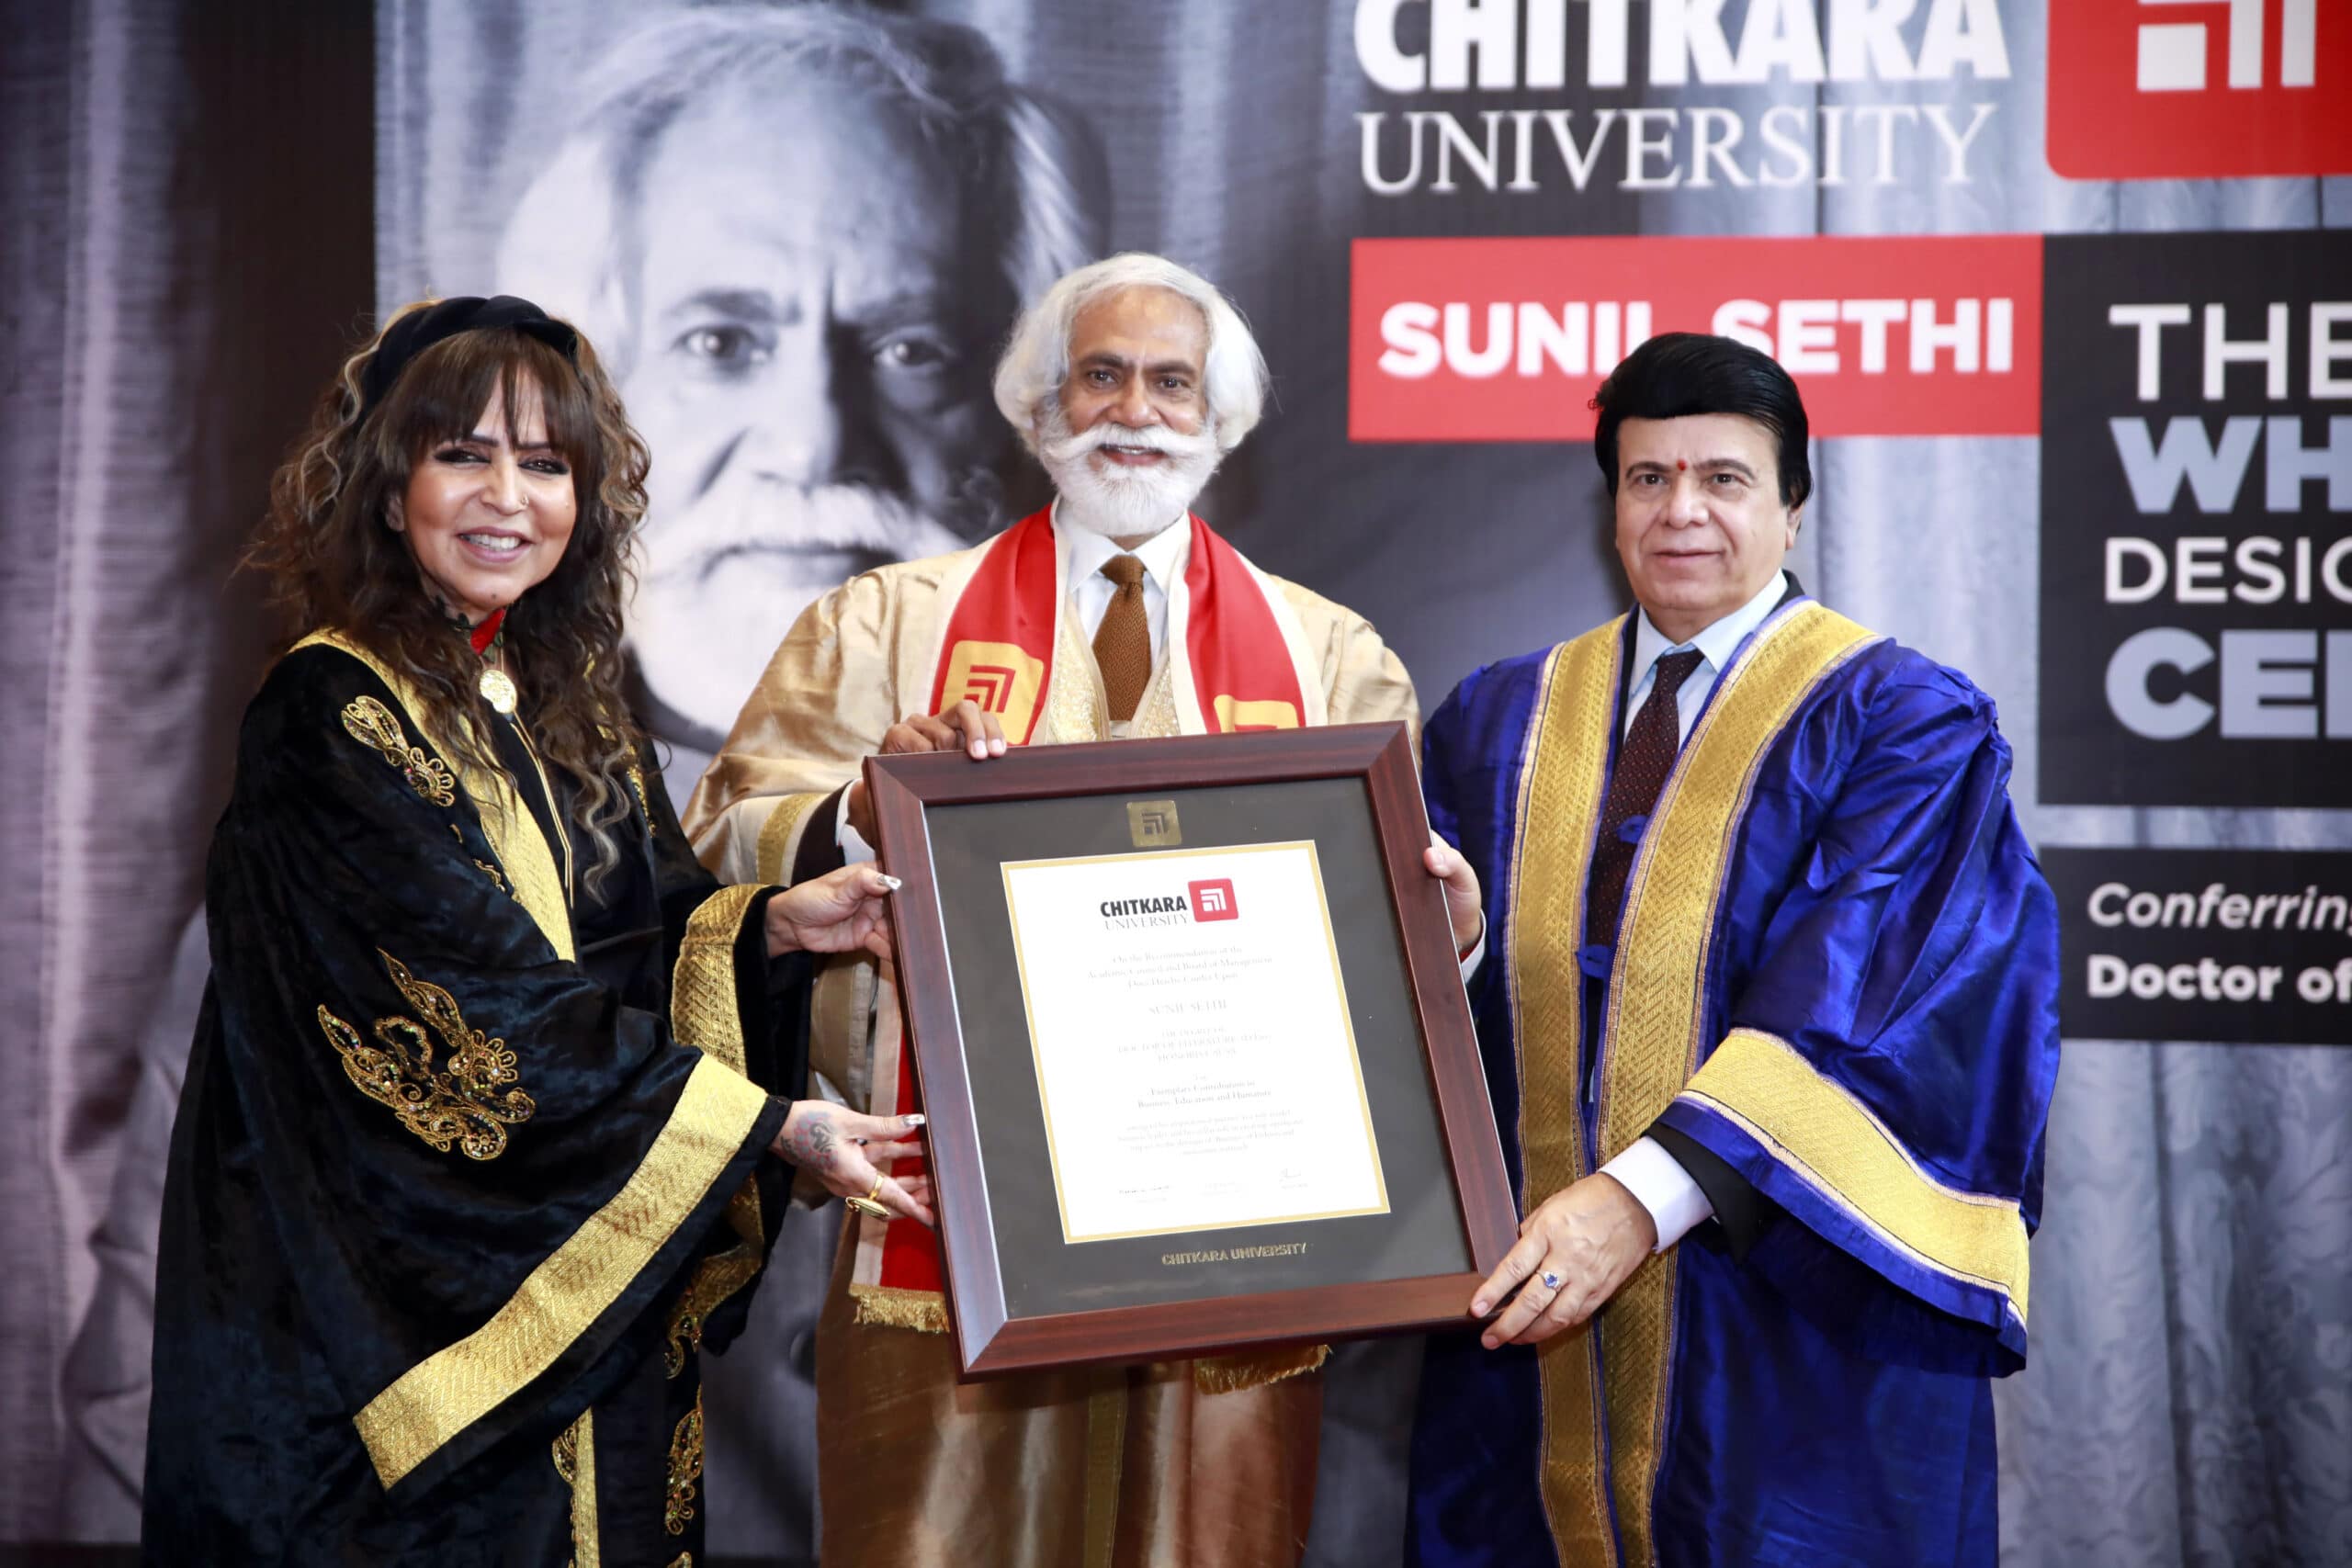 Hony doctorate conferred on FDCI president Sunil Sethi by Chitkara University